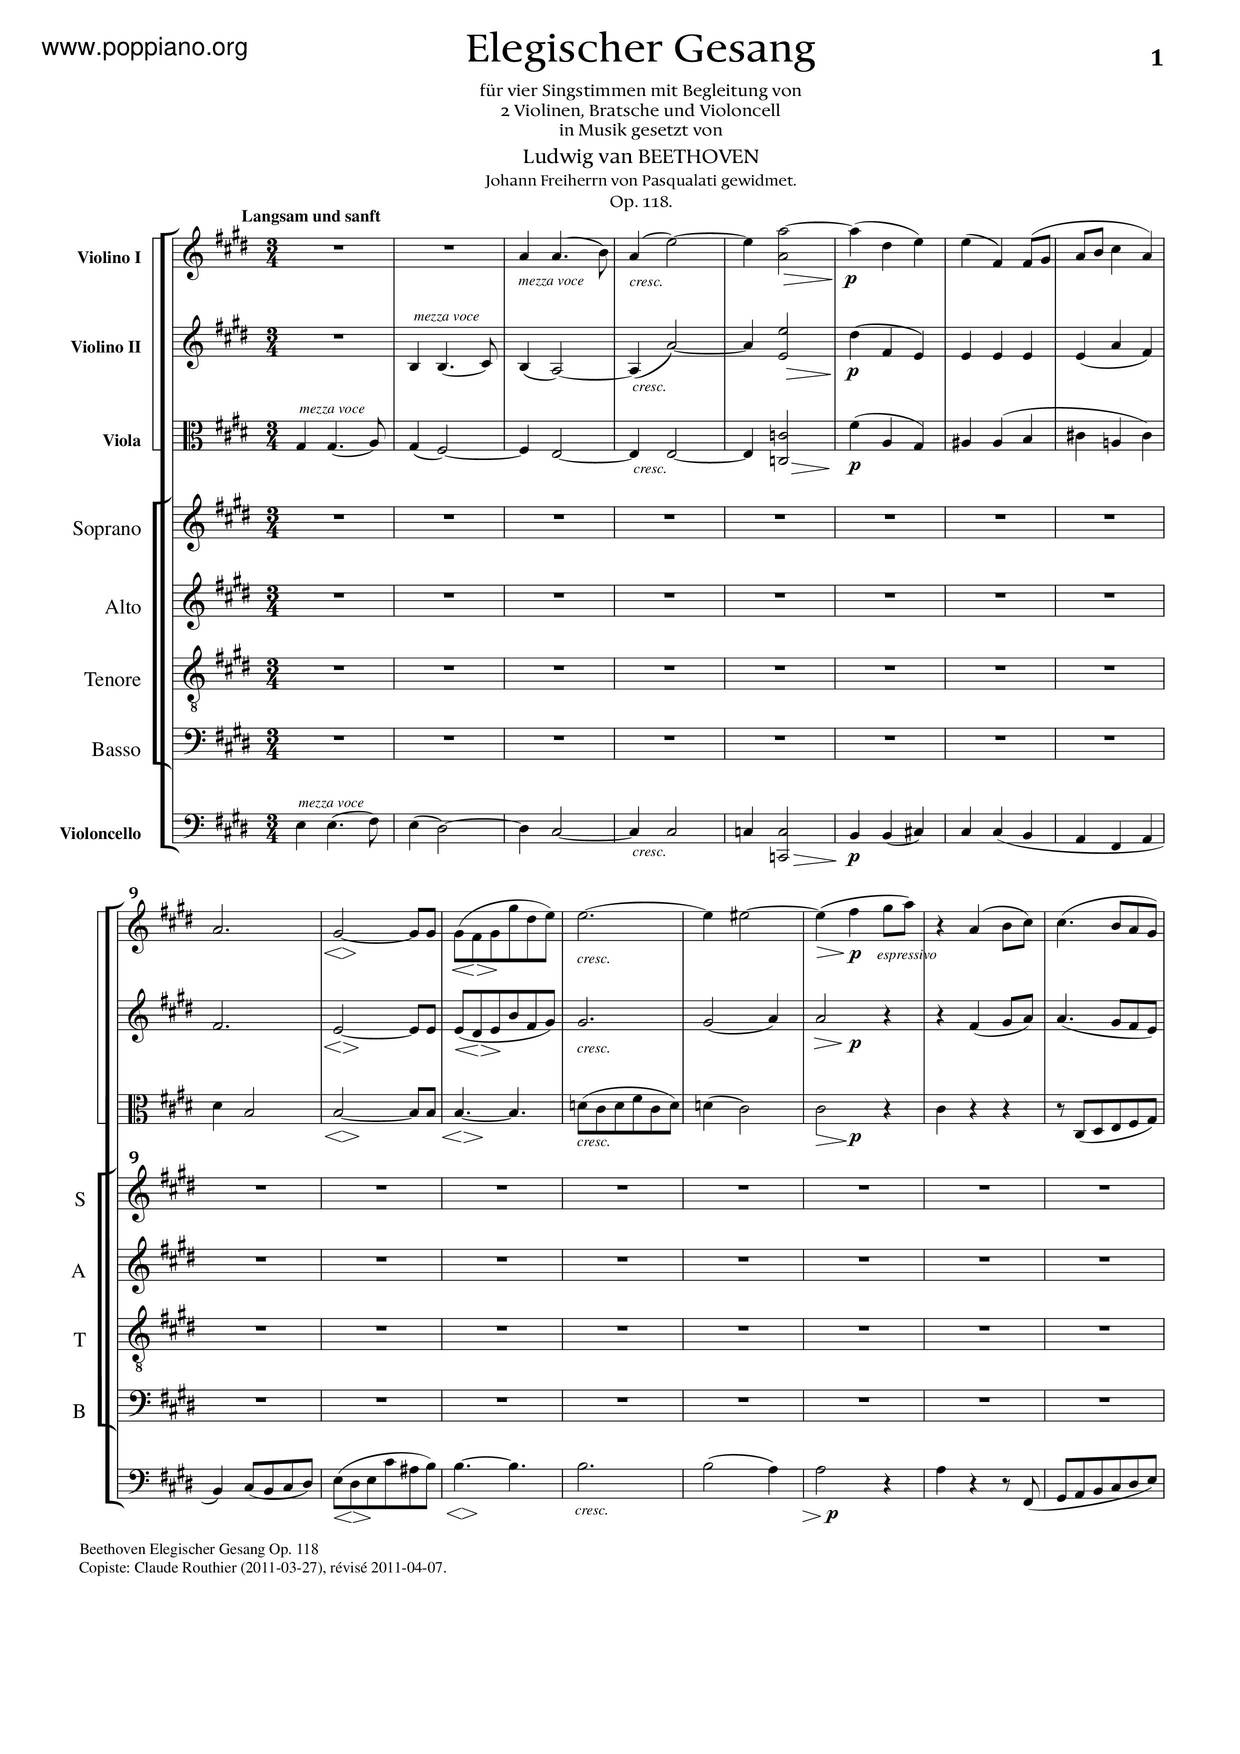 Elegischer Gesang, Op. 118ピアノ譜